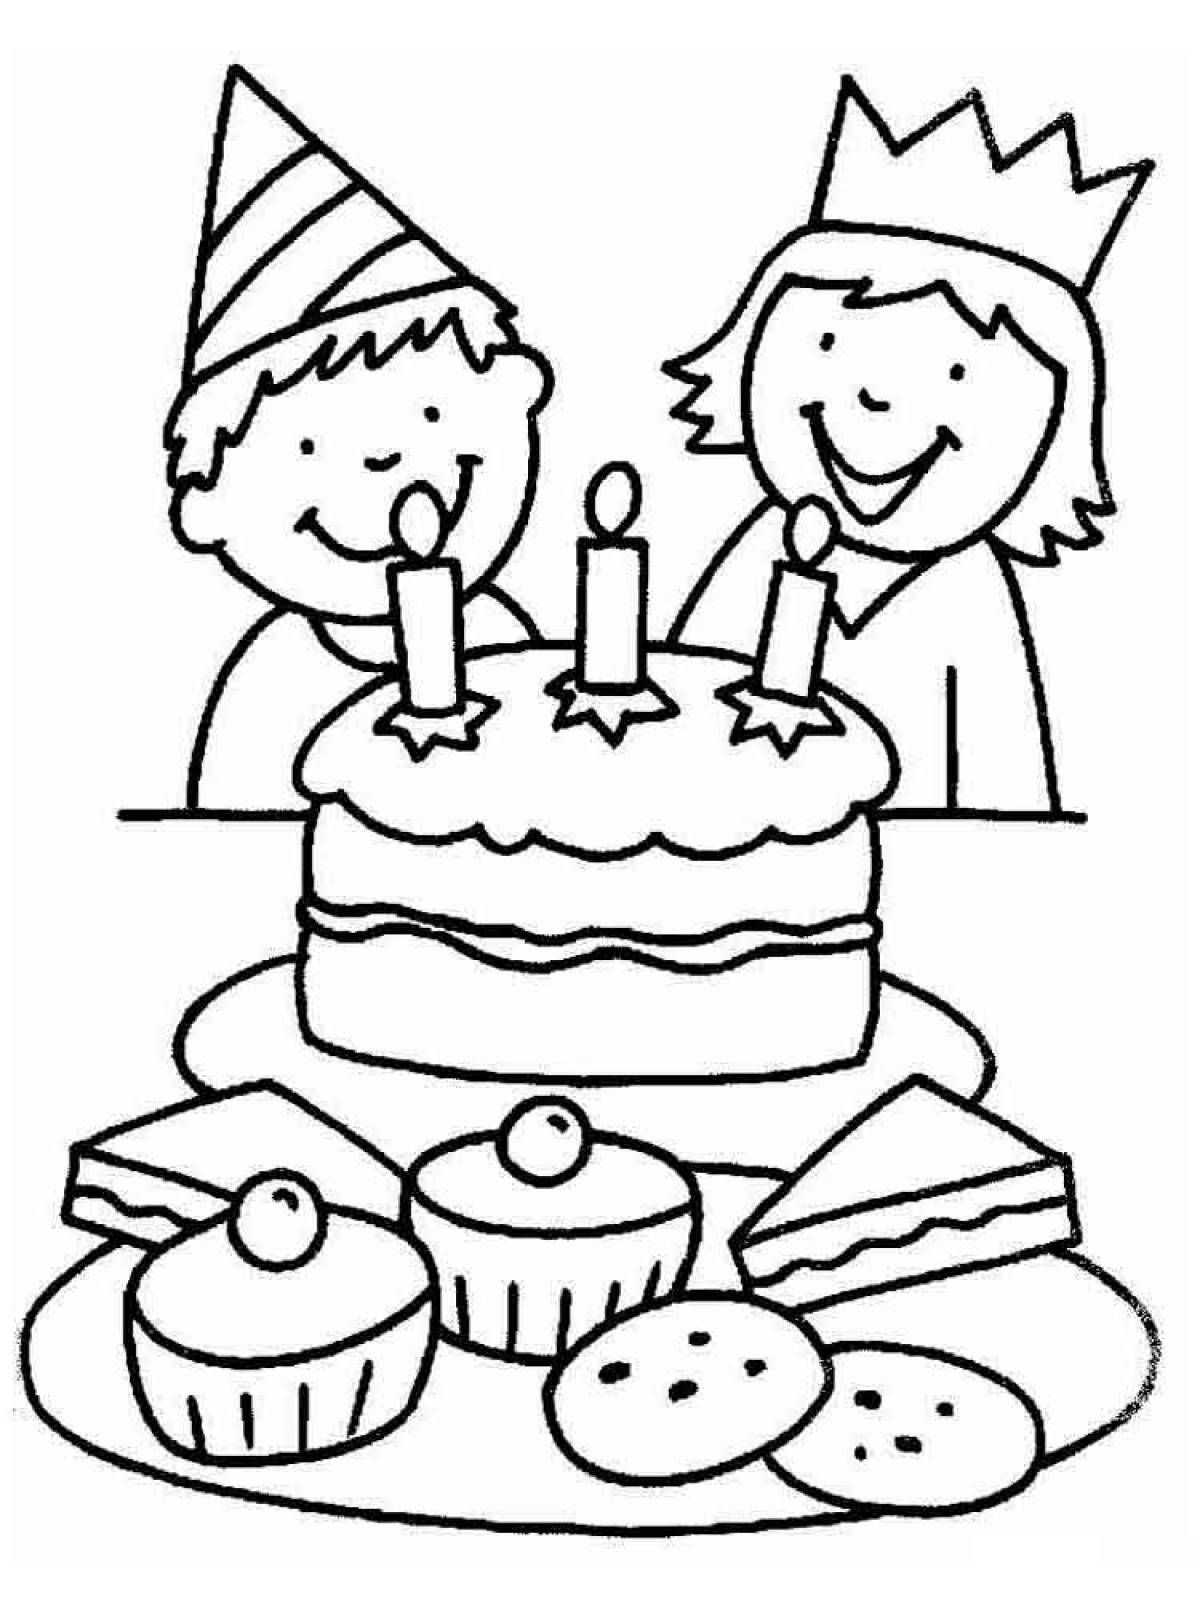 Children and cake